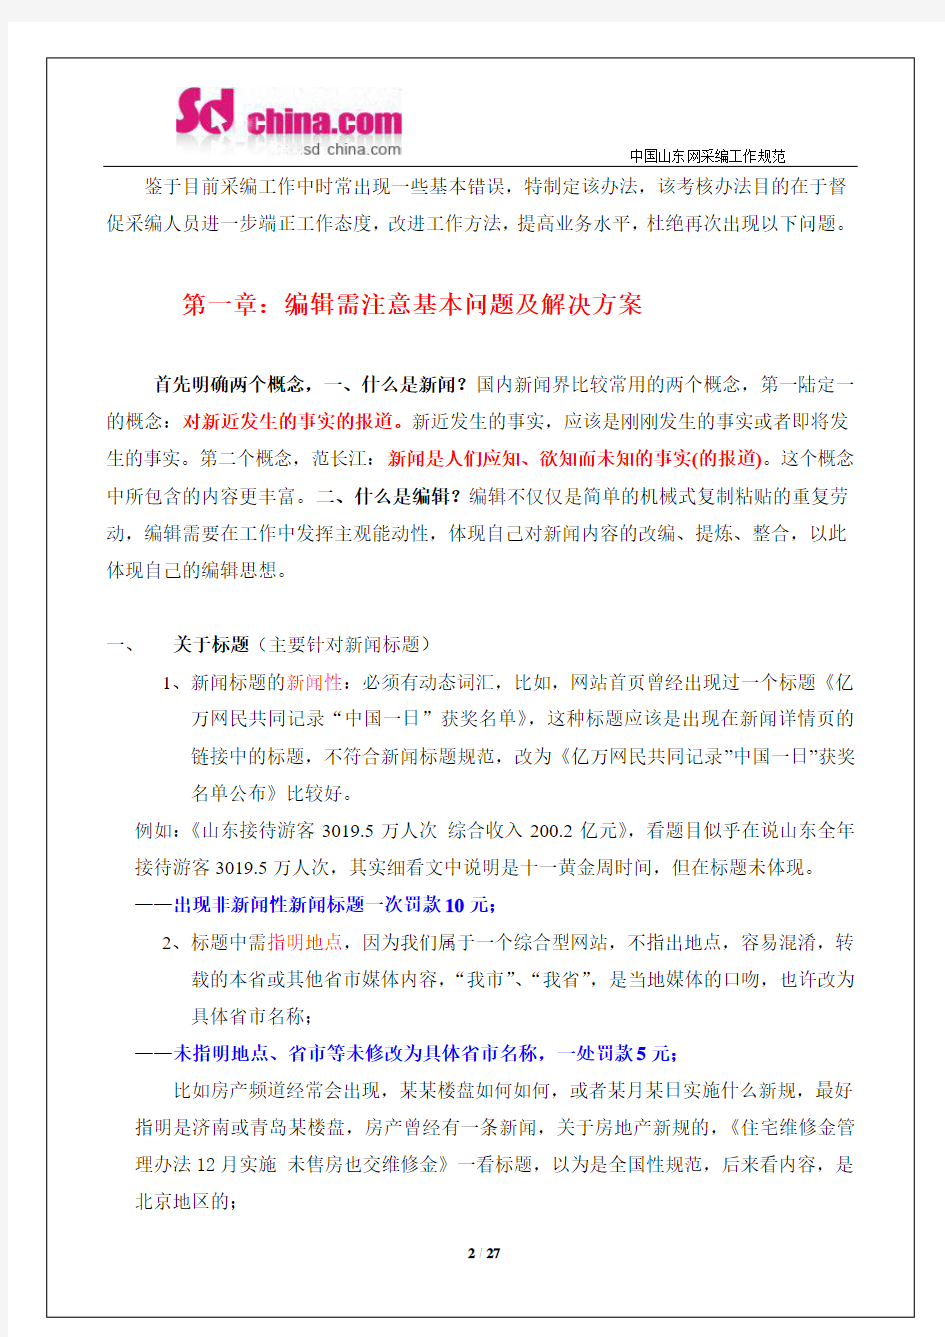 中国山东网采编人员工作规范及考核办法(2011.5.30)